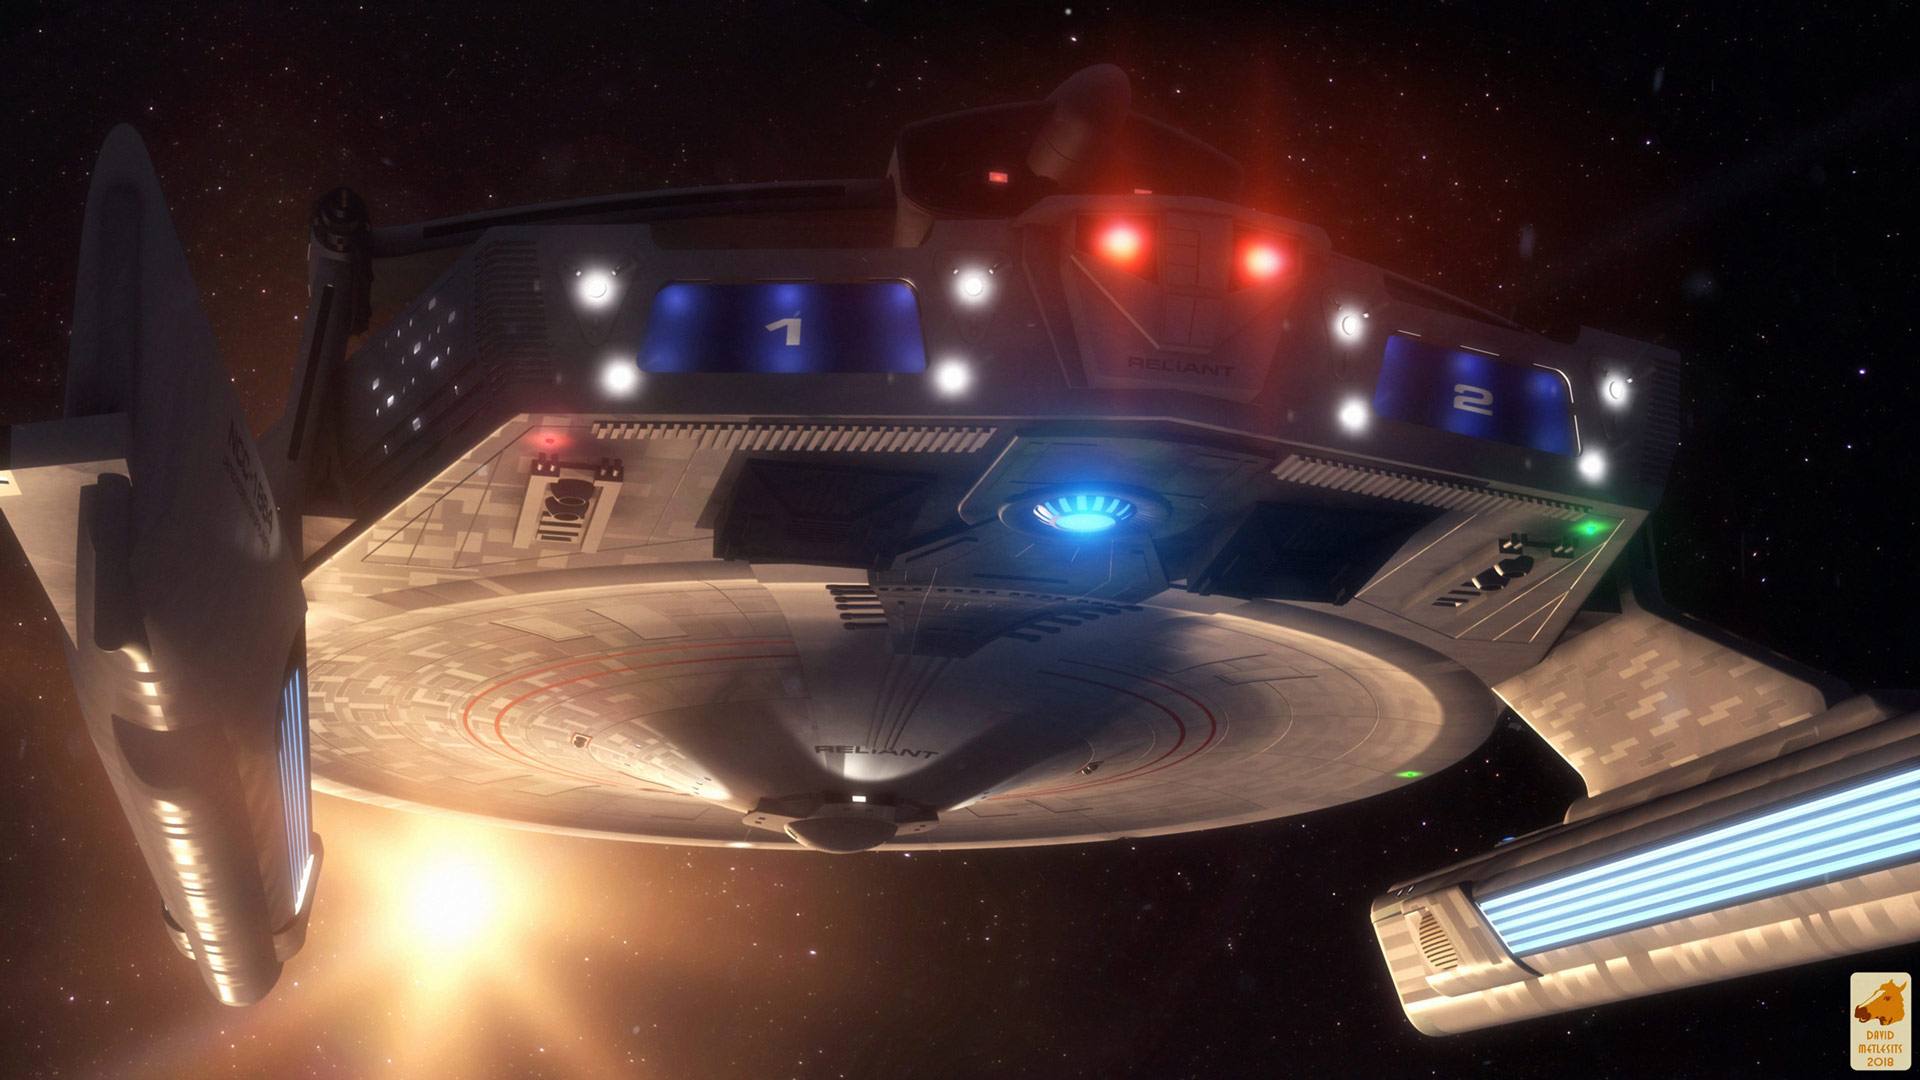 - Star Trek Forever Uss Enterprise Reliant - Night - HD Wallpaper 